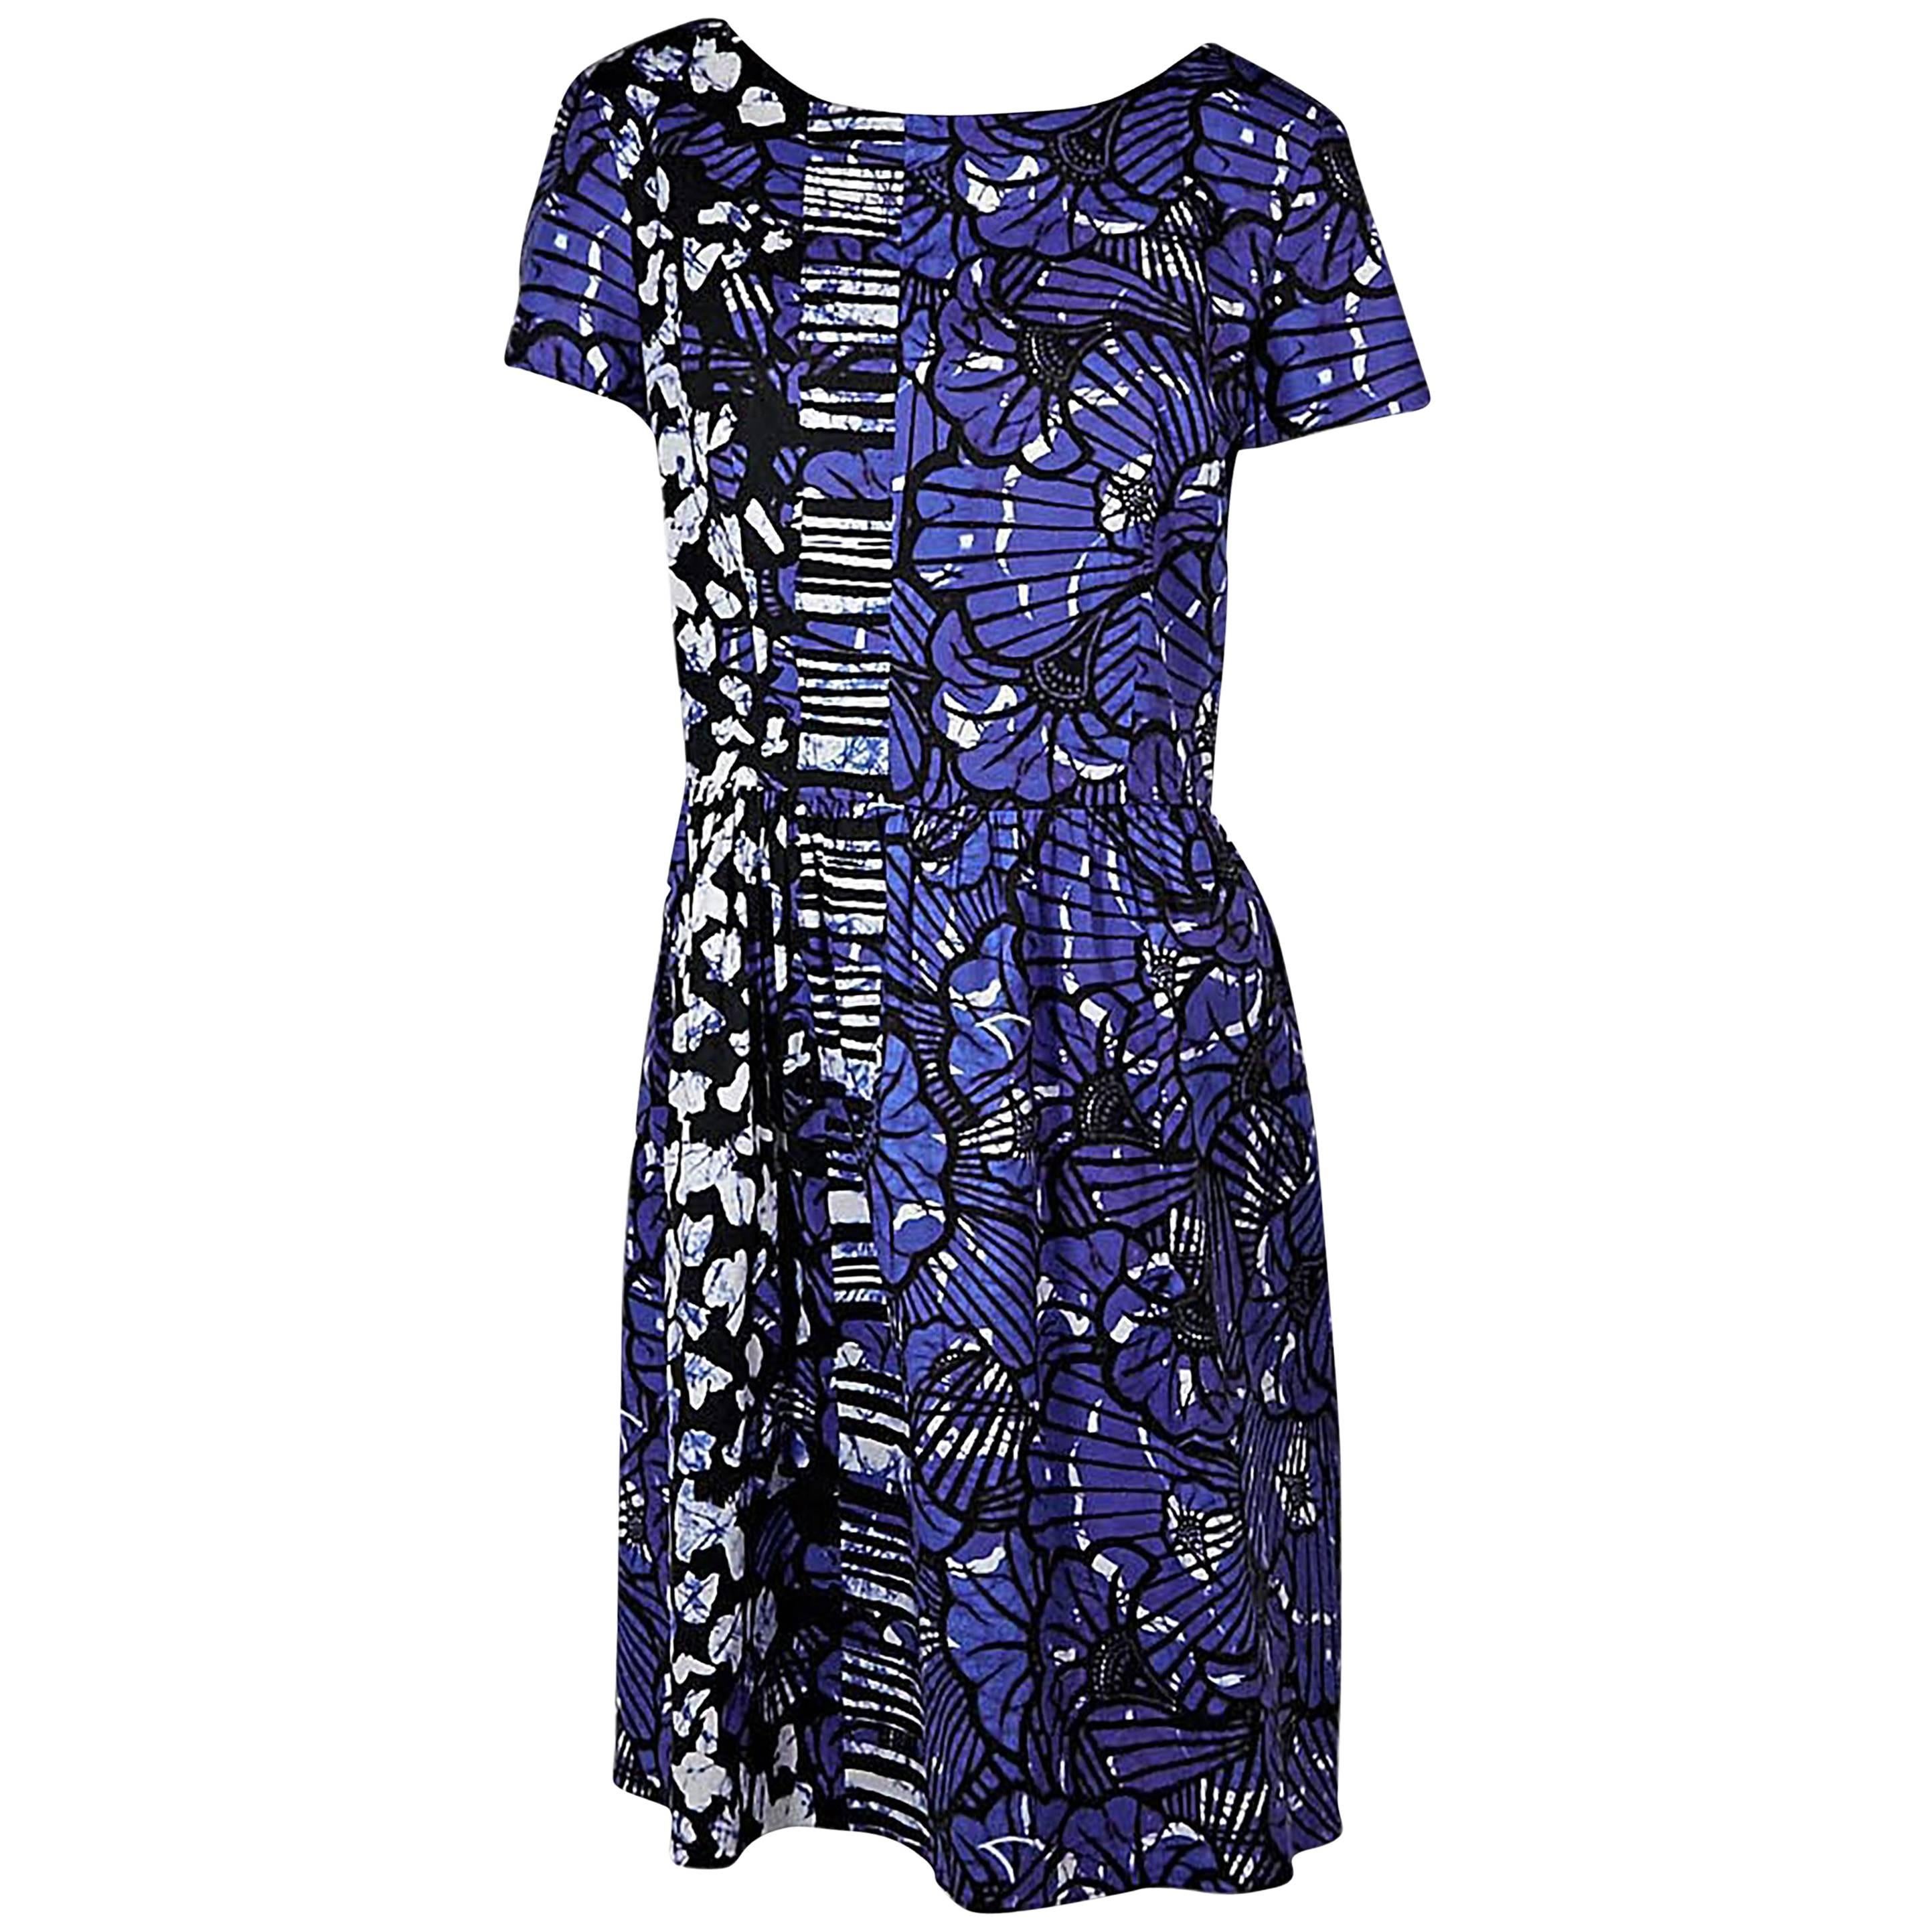 Blue Oscar de la Renta Printed Dress